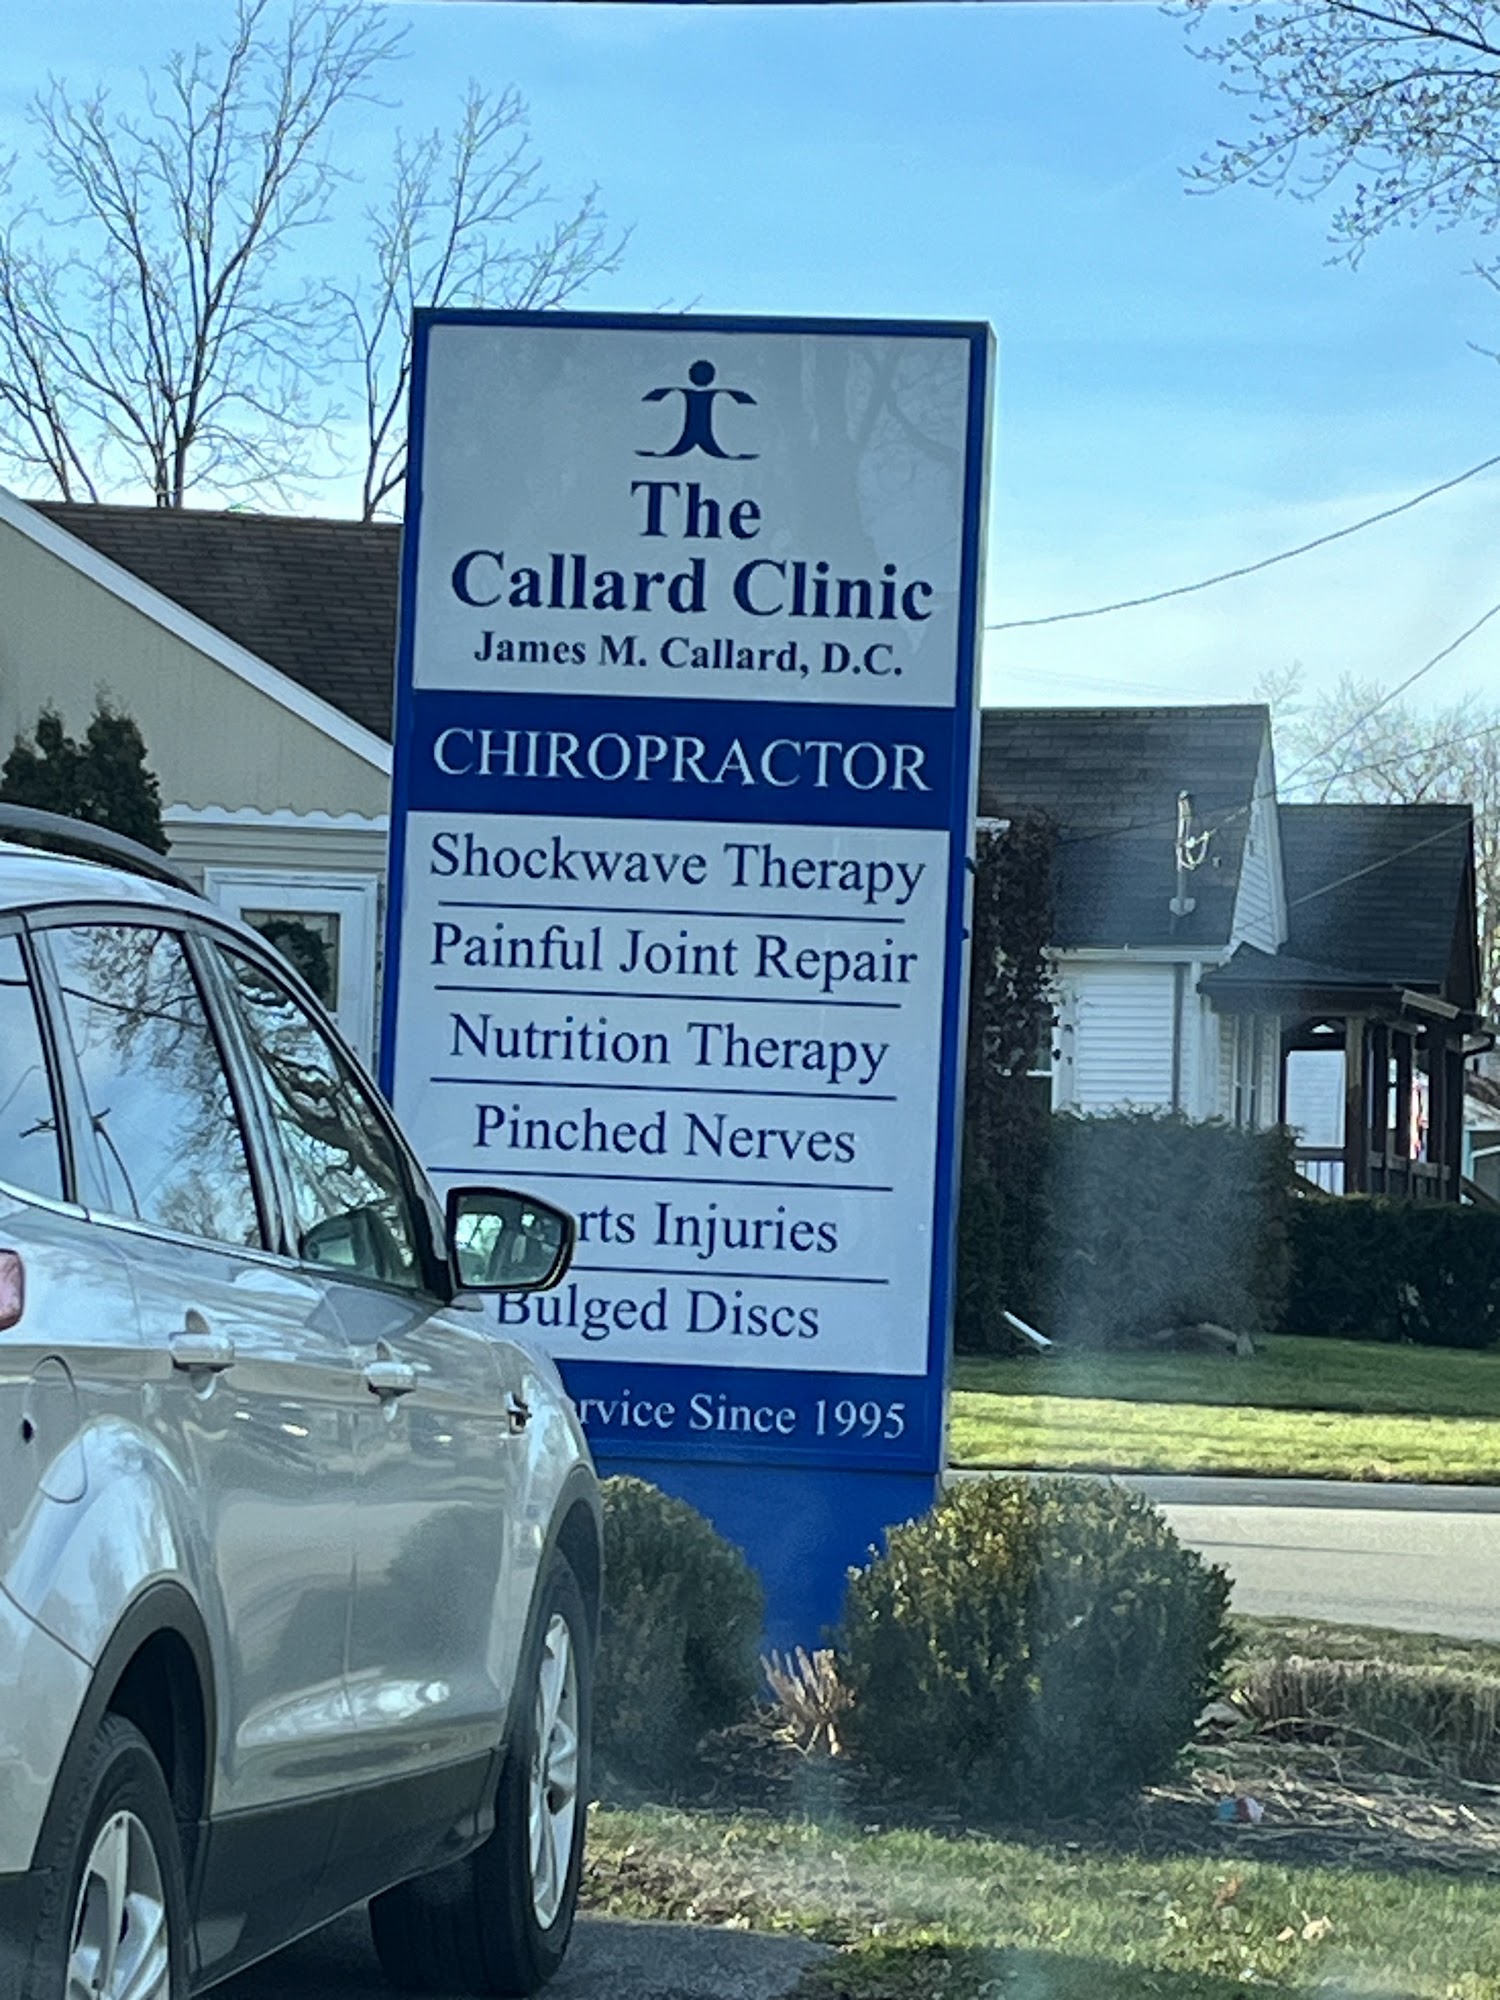 The Callard Clinic